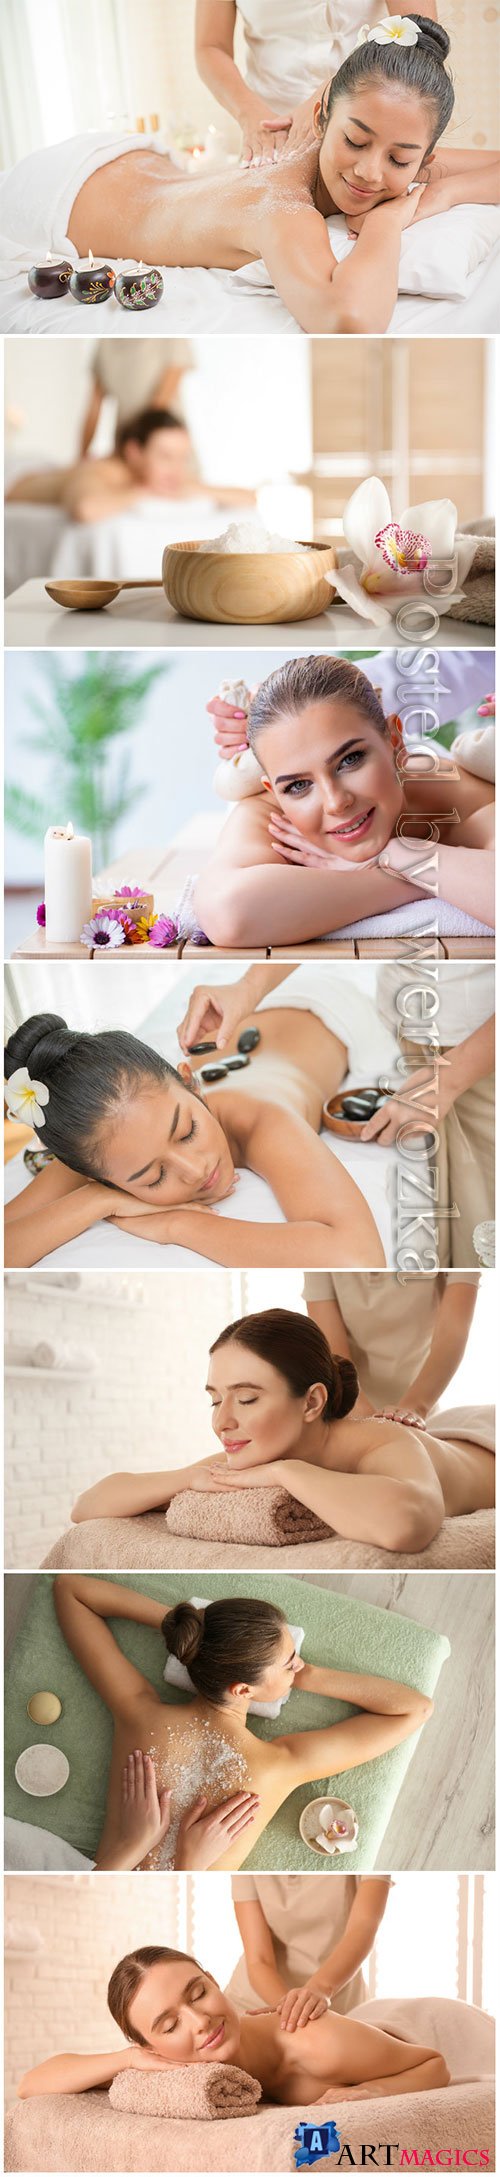 Spa treatments, beautiful, girls, spa, massage